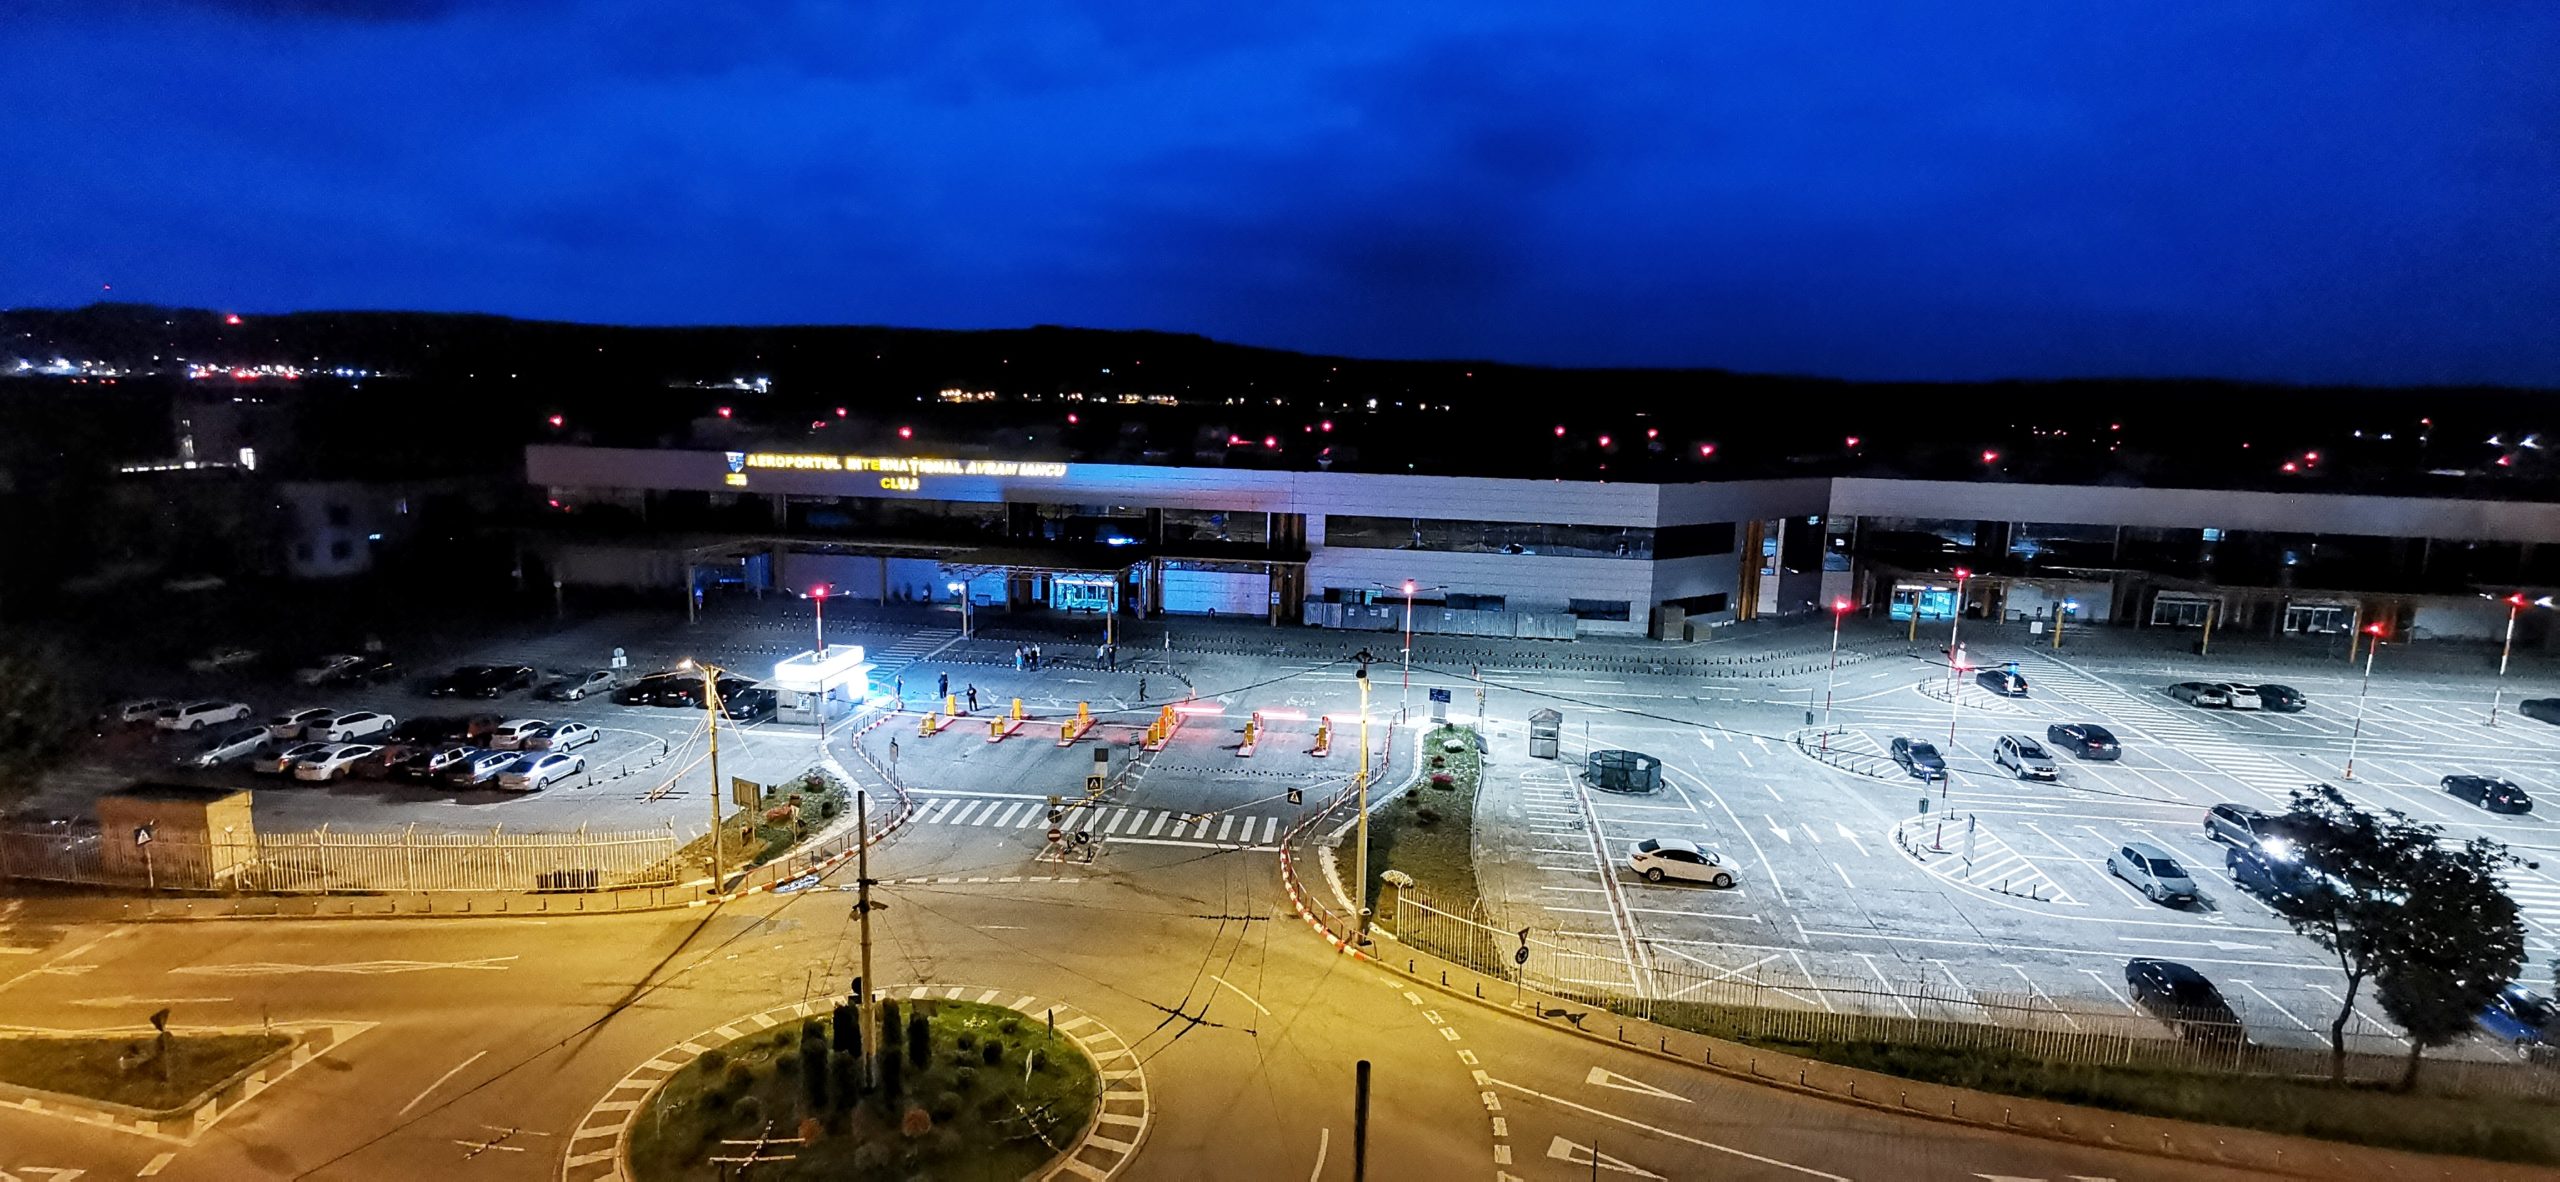 Tarifele de parcare de la Aeroport Cluj cresc semnificativ. Sindicatul de la Aeroport cere intervenția DNA